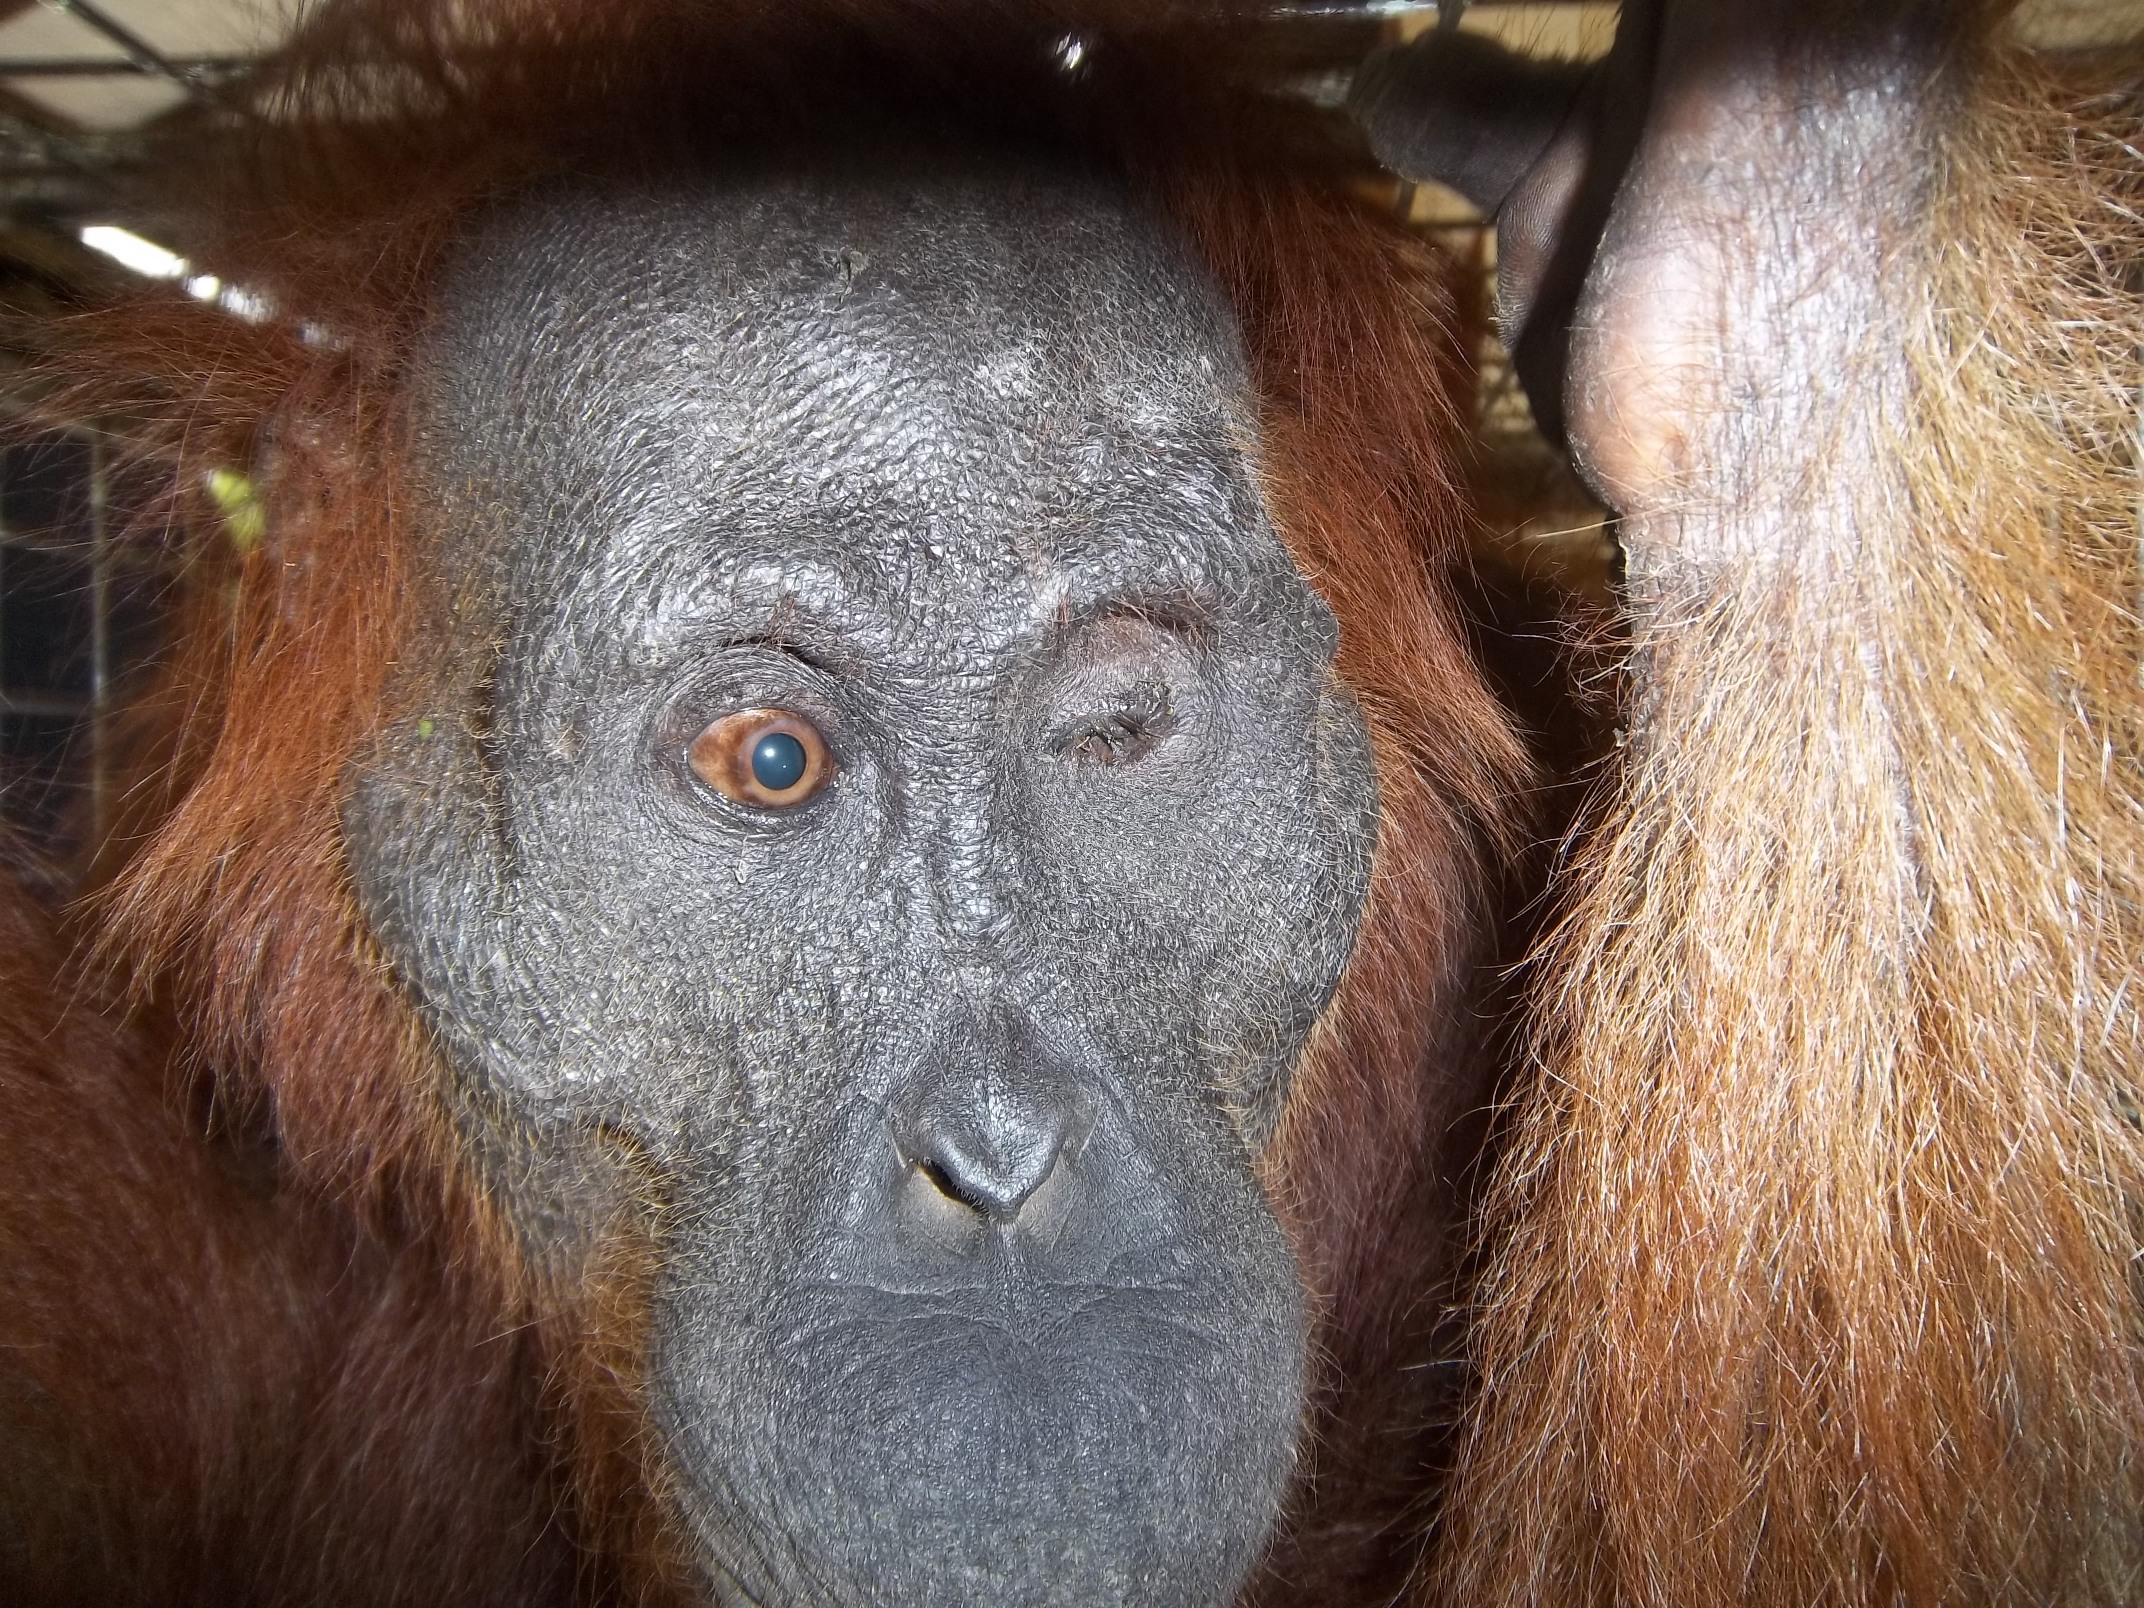 Aan, blind orangutan. Image© Orangutan Foundation.